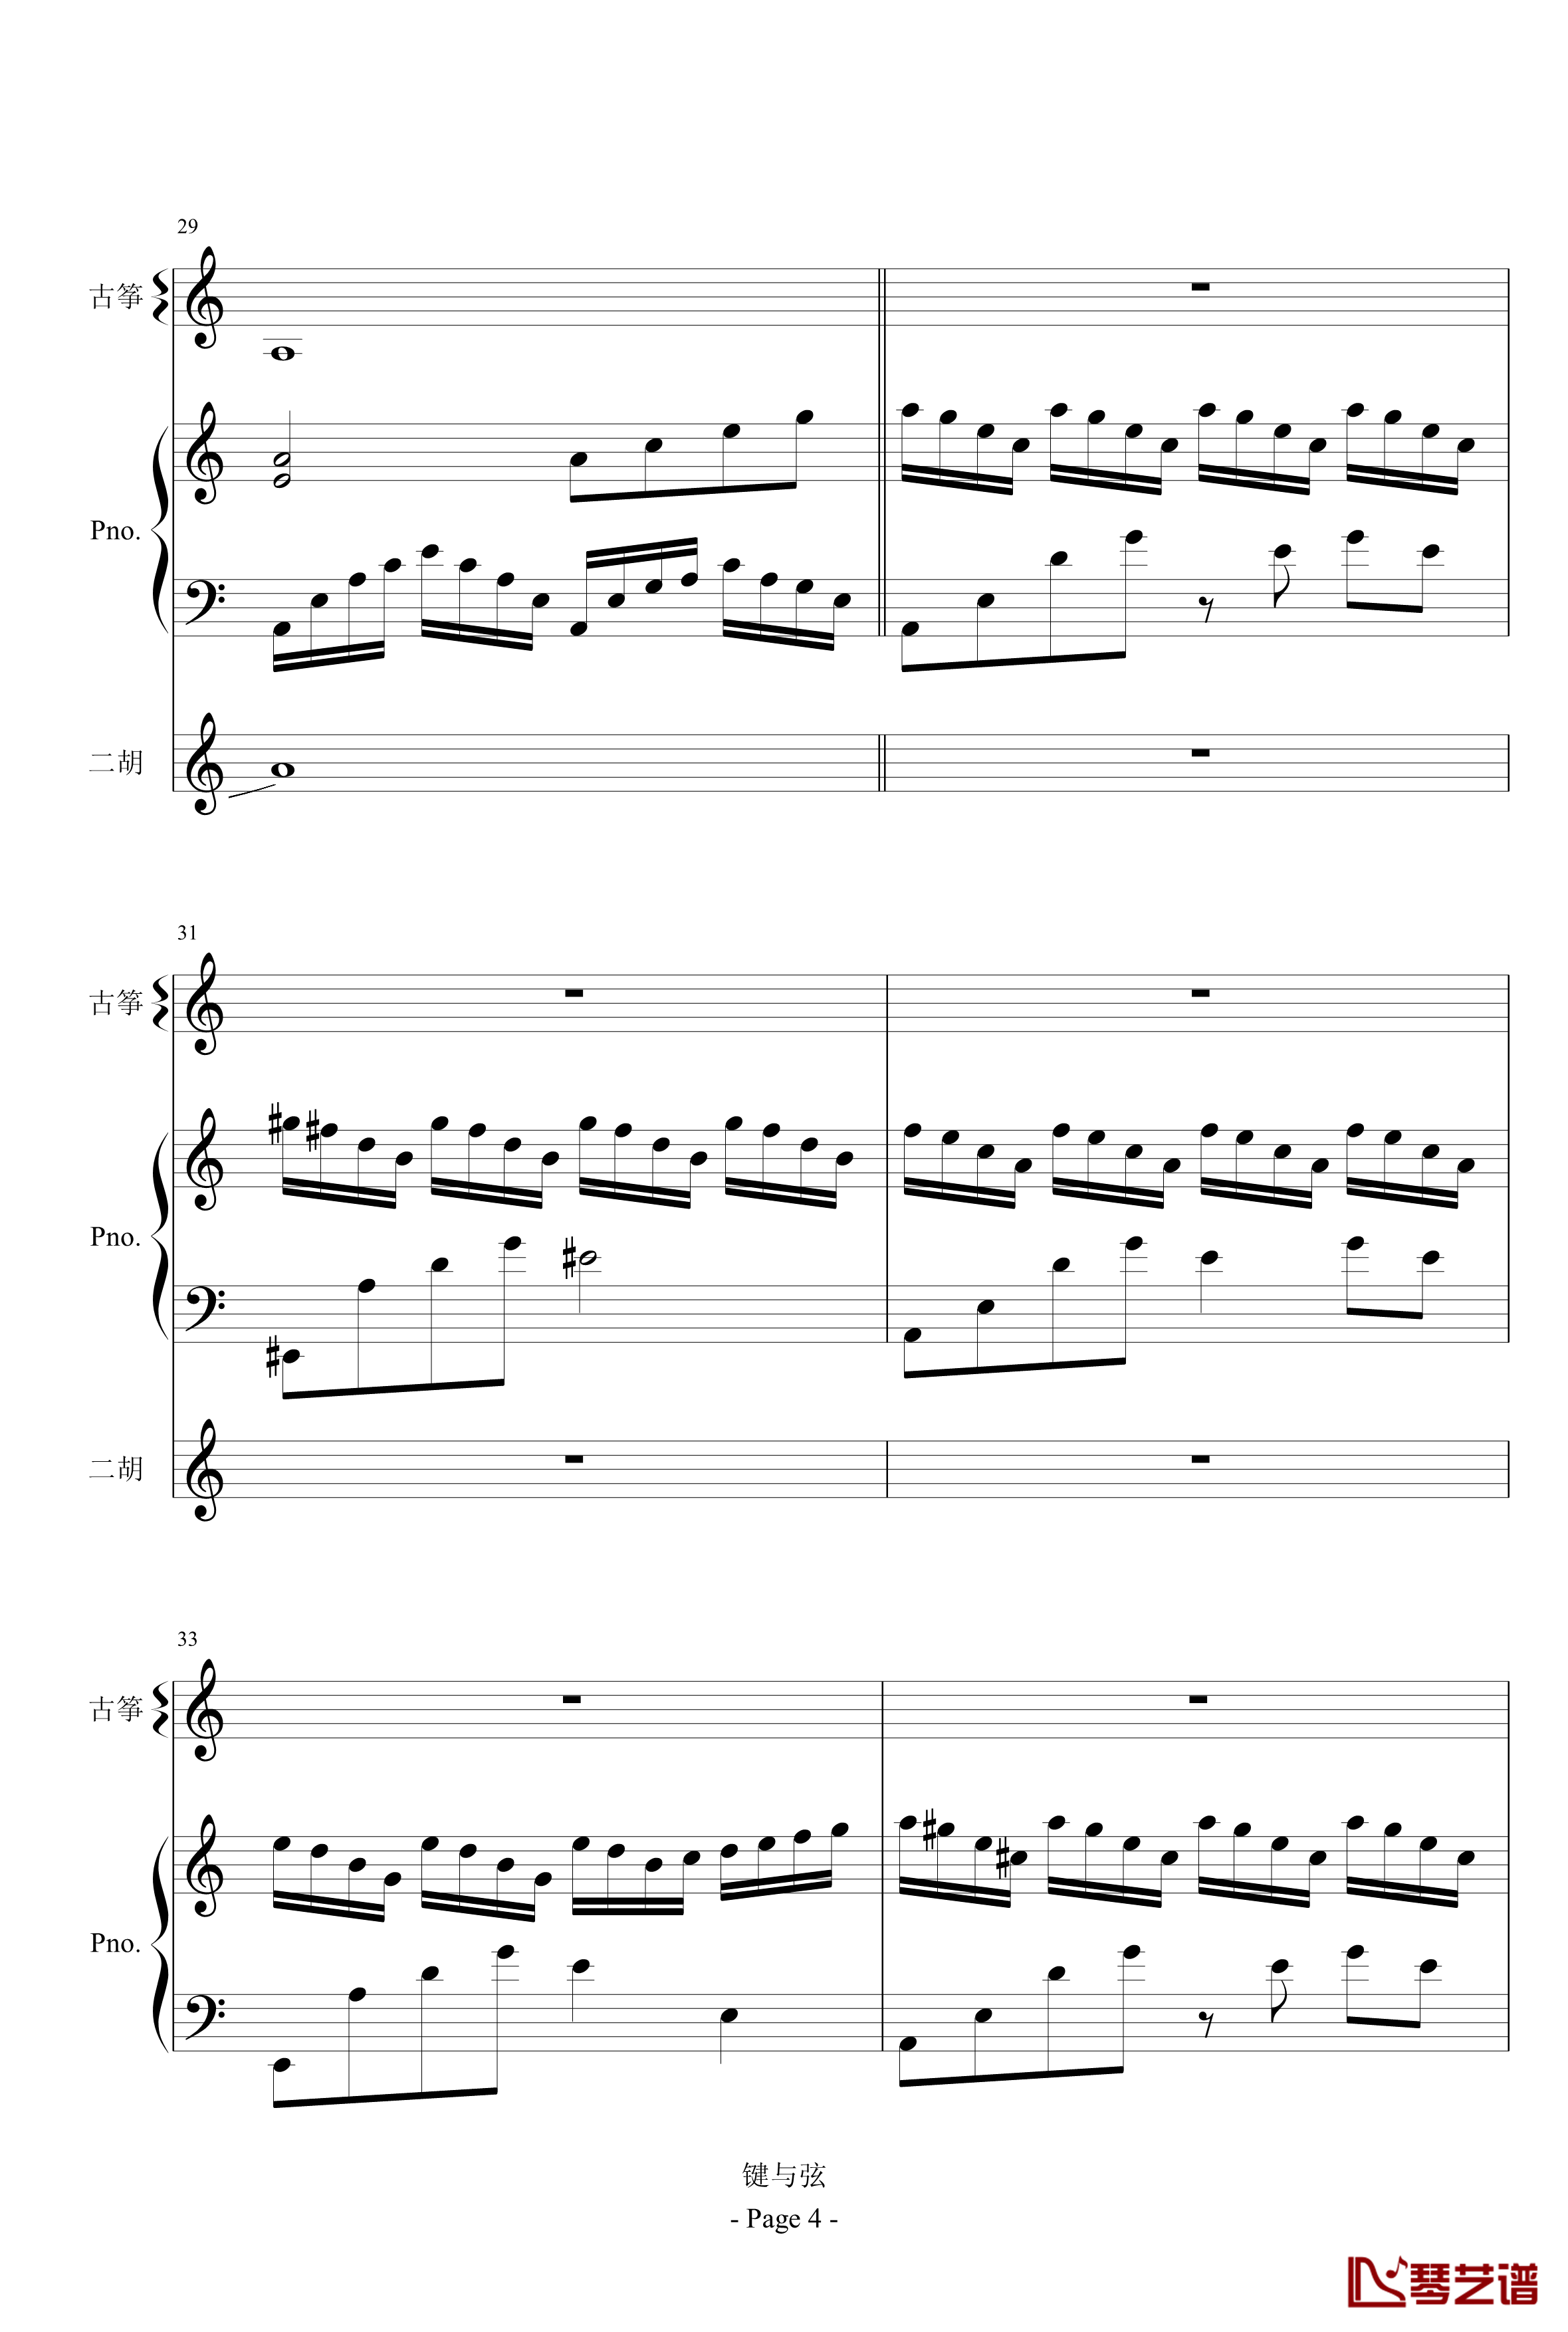 苦情人钢琴谱-古筝、二胡、钢琴-已上传试听-键与弦4